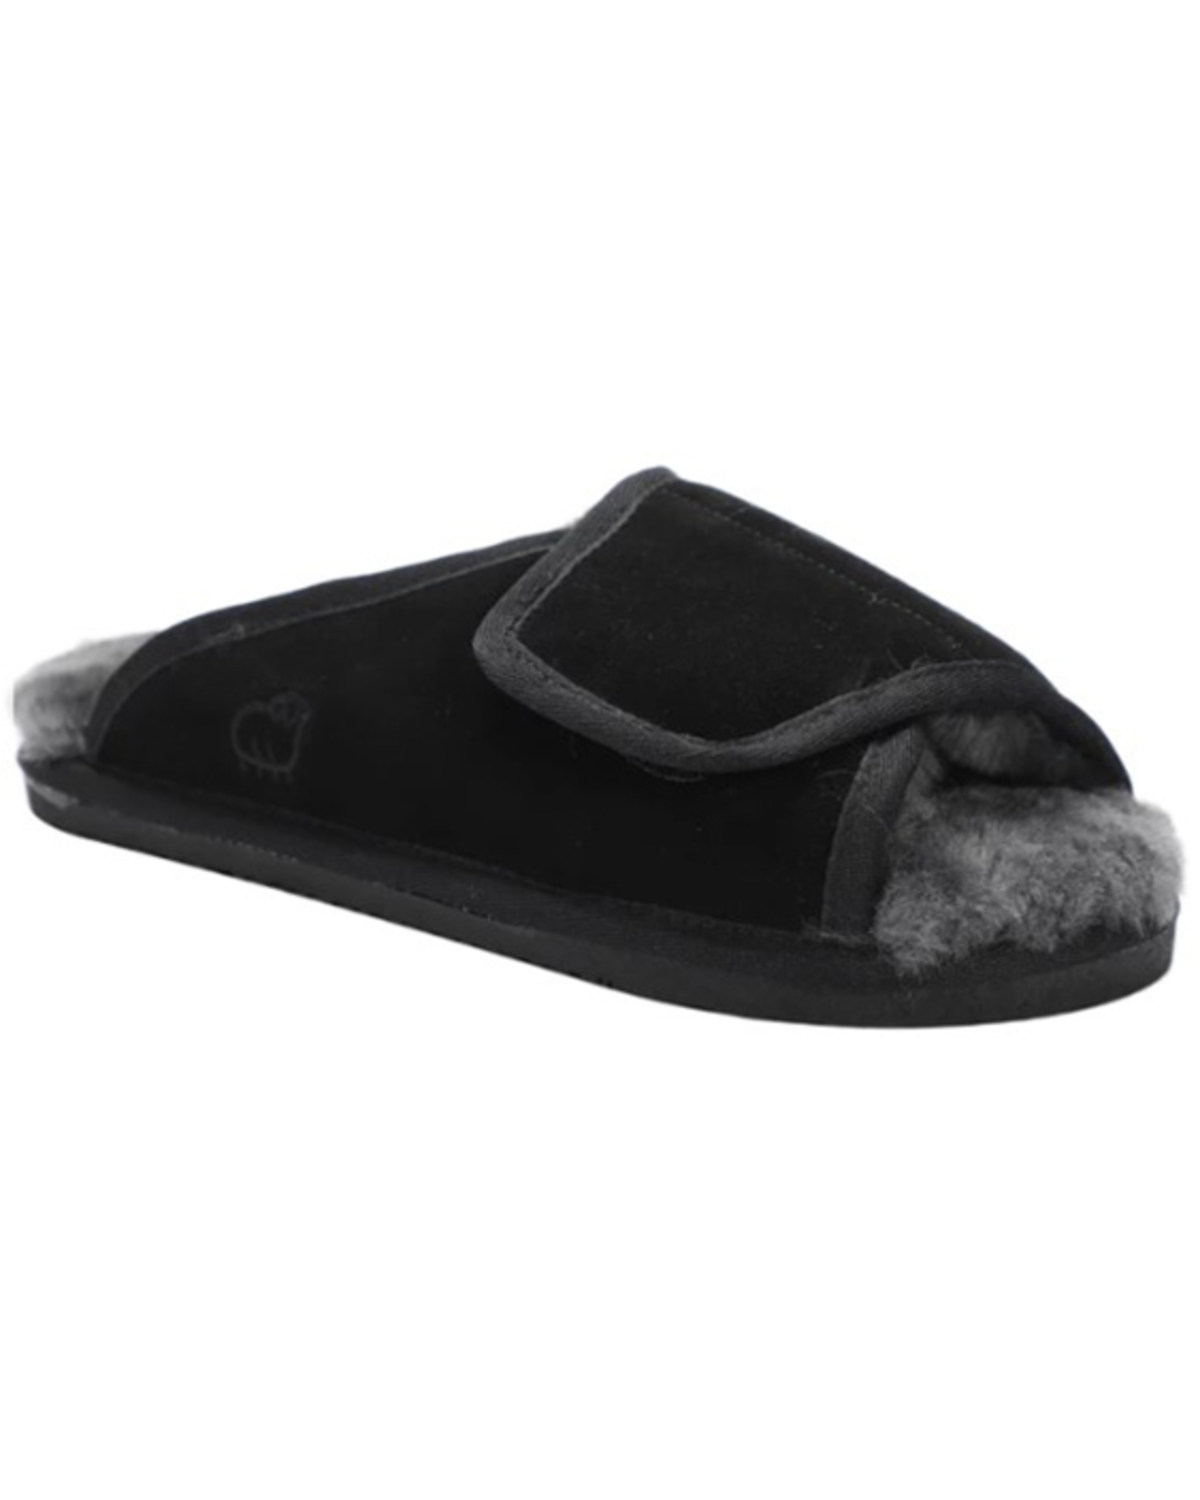 Lamo Footwear Men's Apma Slide Wrap Slippers